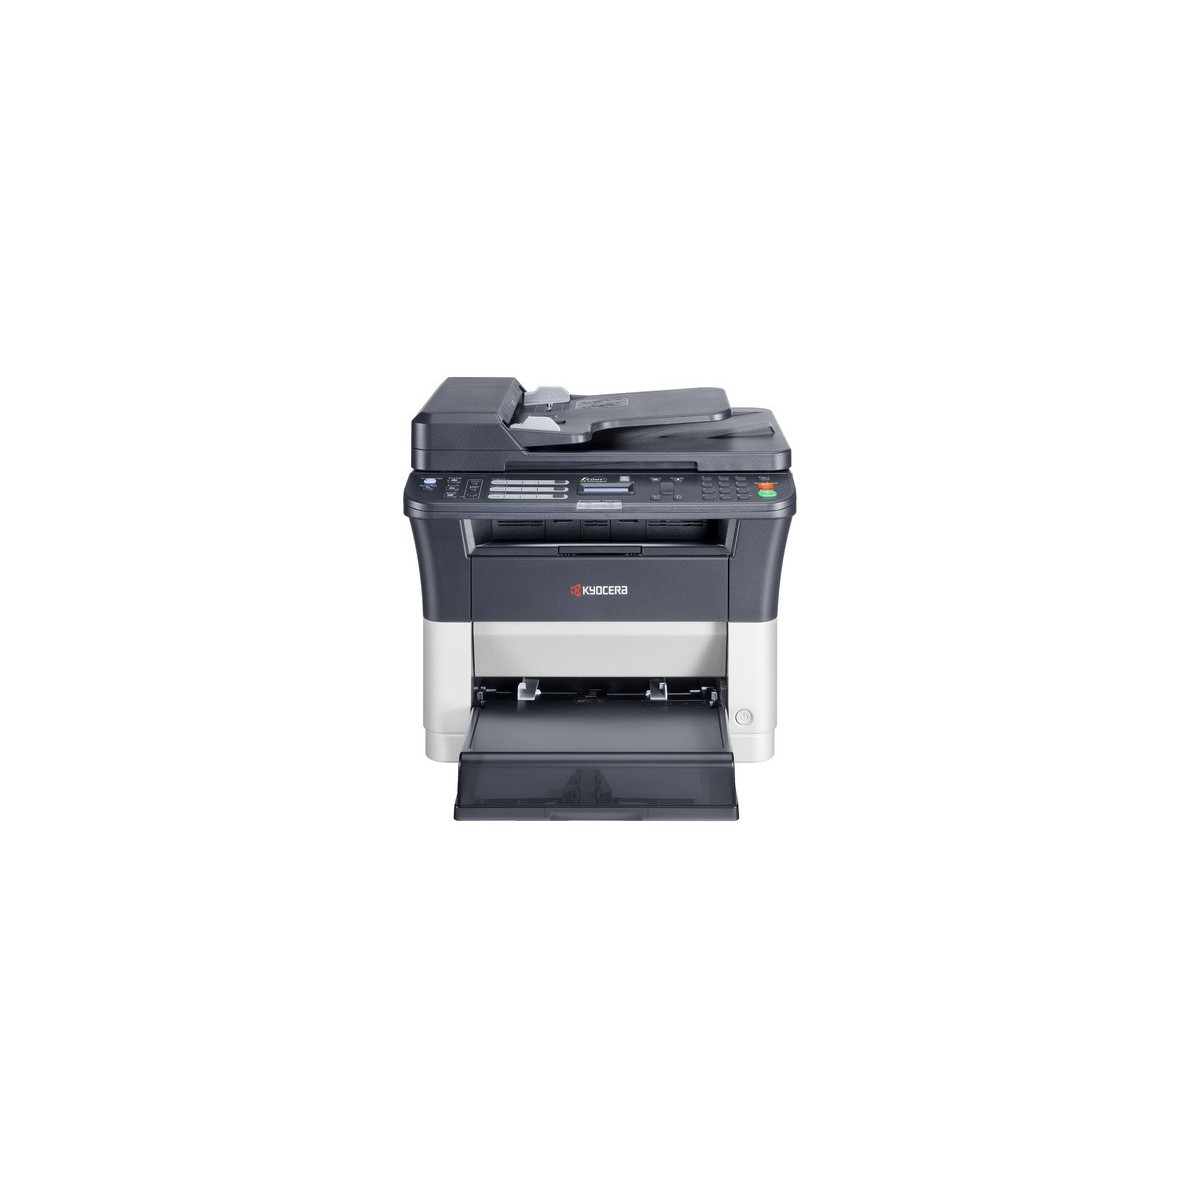 Kyocera FS -1325MFP - Laser - Mono printing - 1800 x 600 DPI - Mono copying - A4 - Black - White